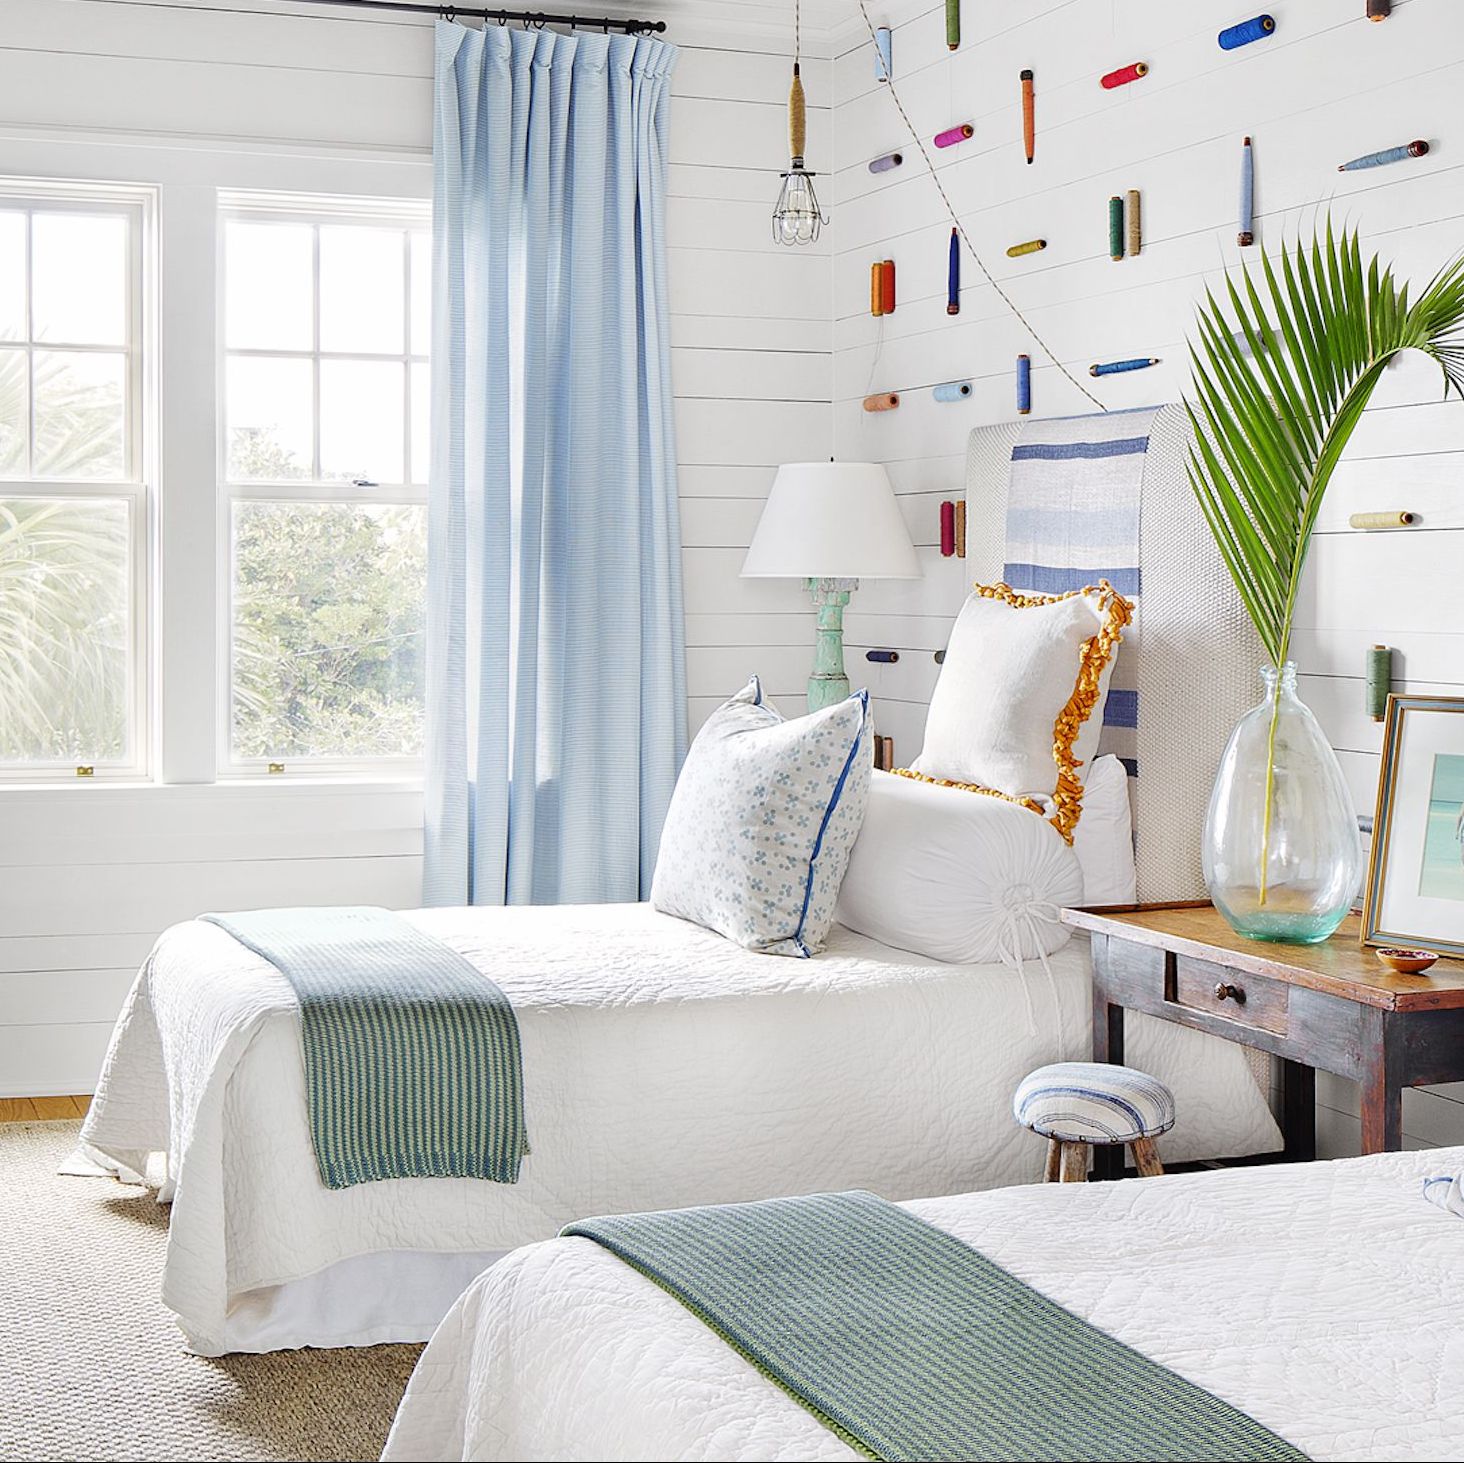 seaside themed wallpaper,furniture,room,white,interior design,bedroom